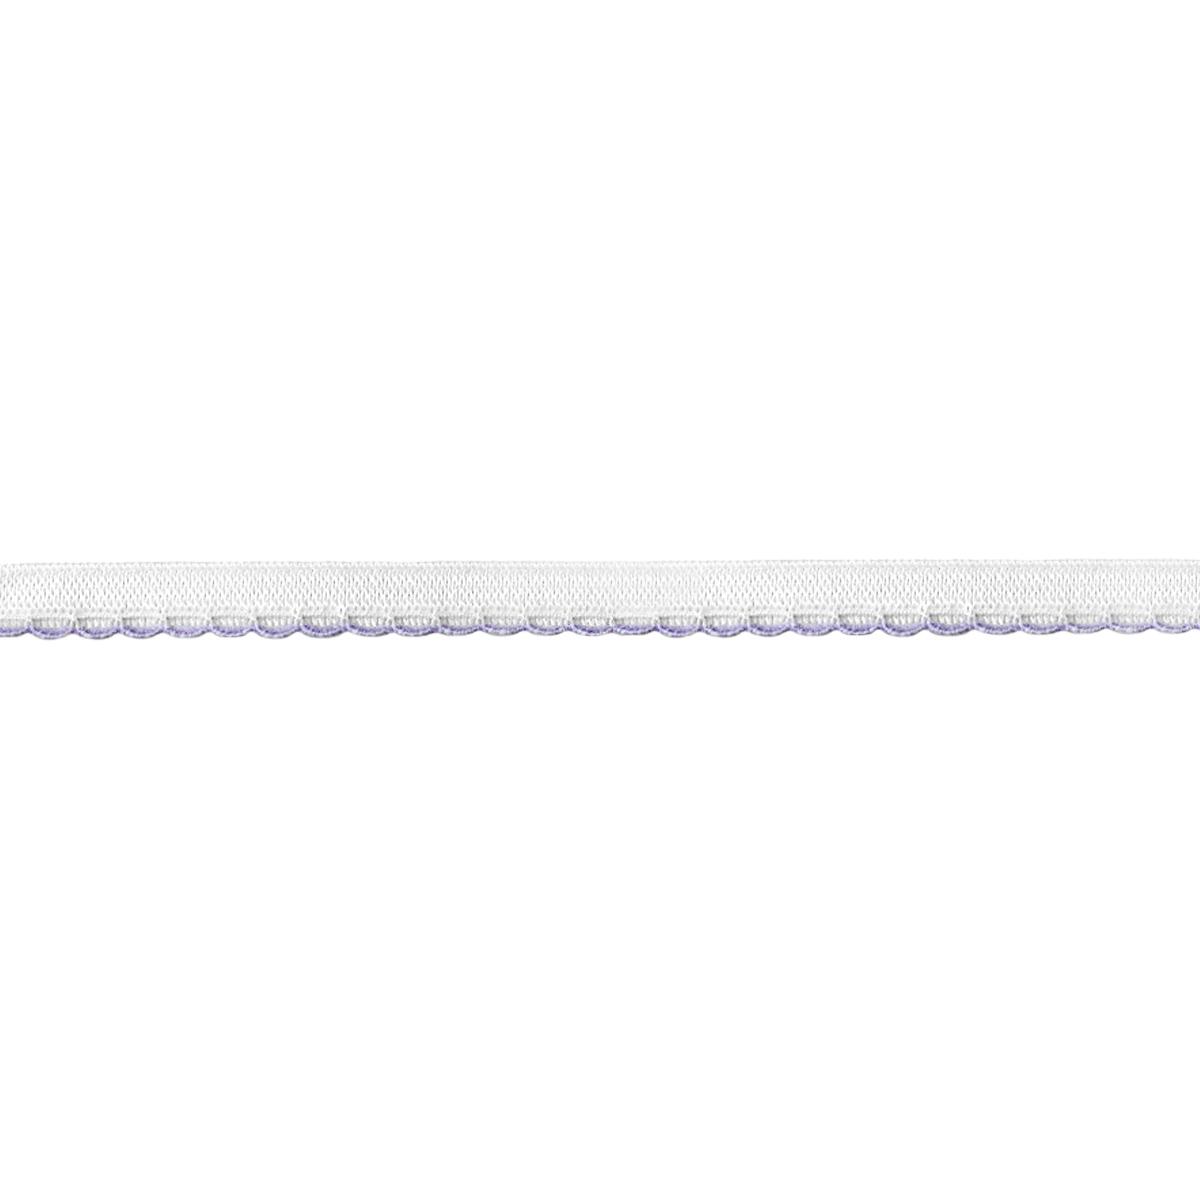 Резинка ажурная для нижнего белья арт. 9112-010 шир. 10 мм бело/сиреневая (уп. 50 м)